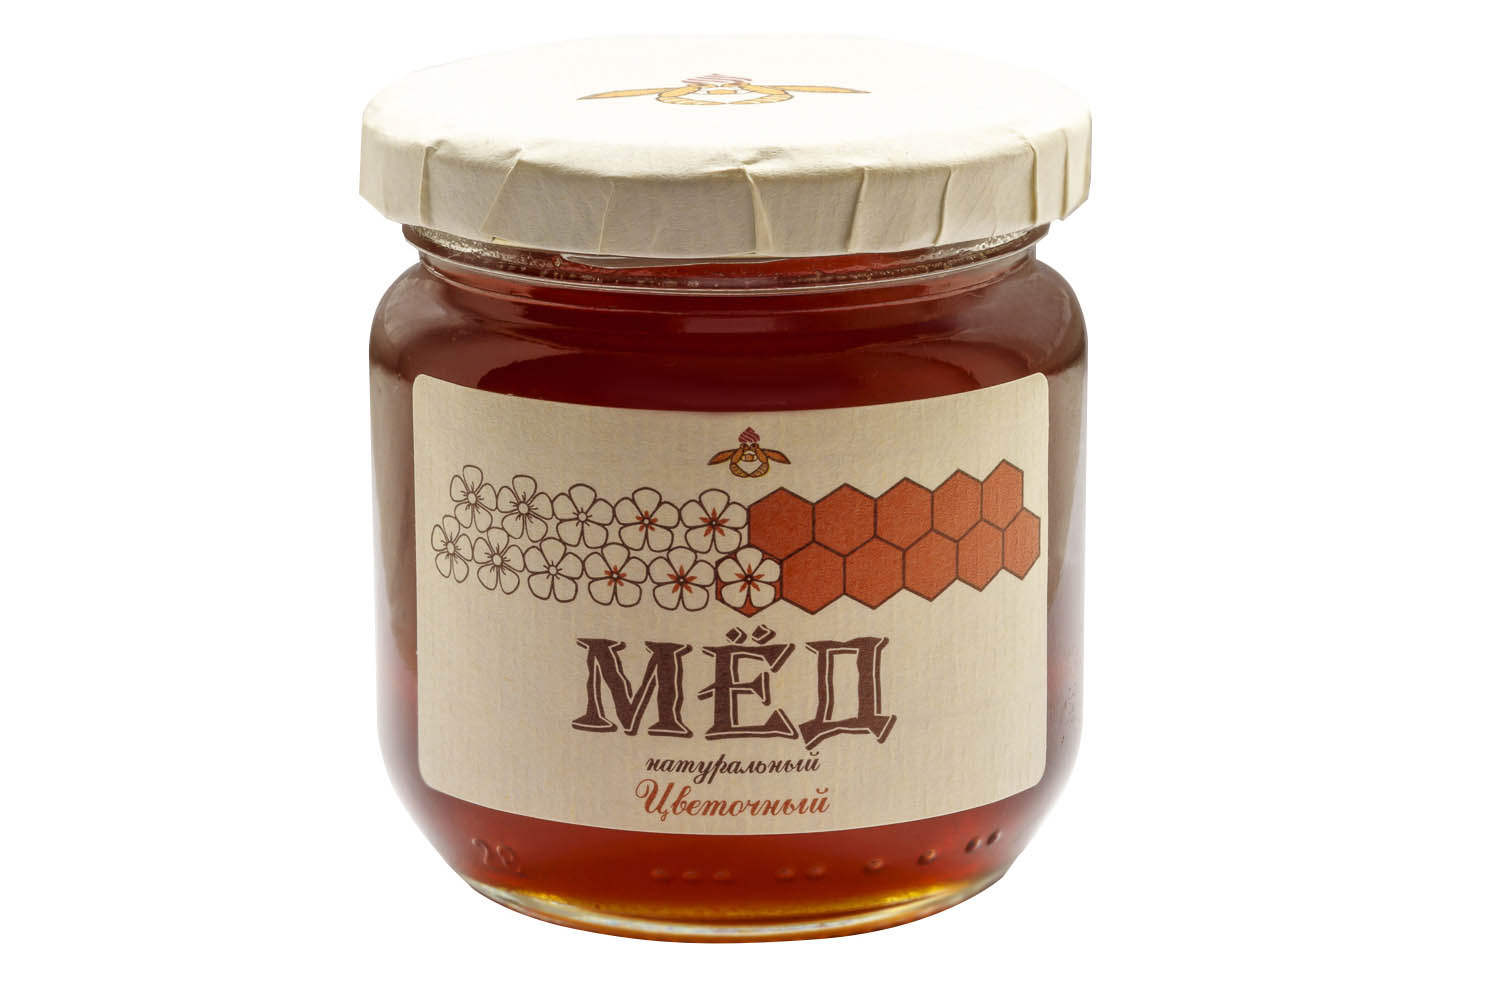 Дом меда москва. Мёд горный. Мед домашний. Мёд цветочный 1 кг. Майский горный мед.